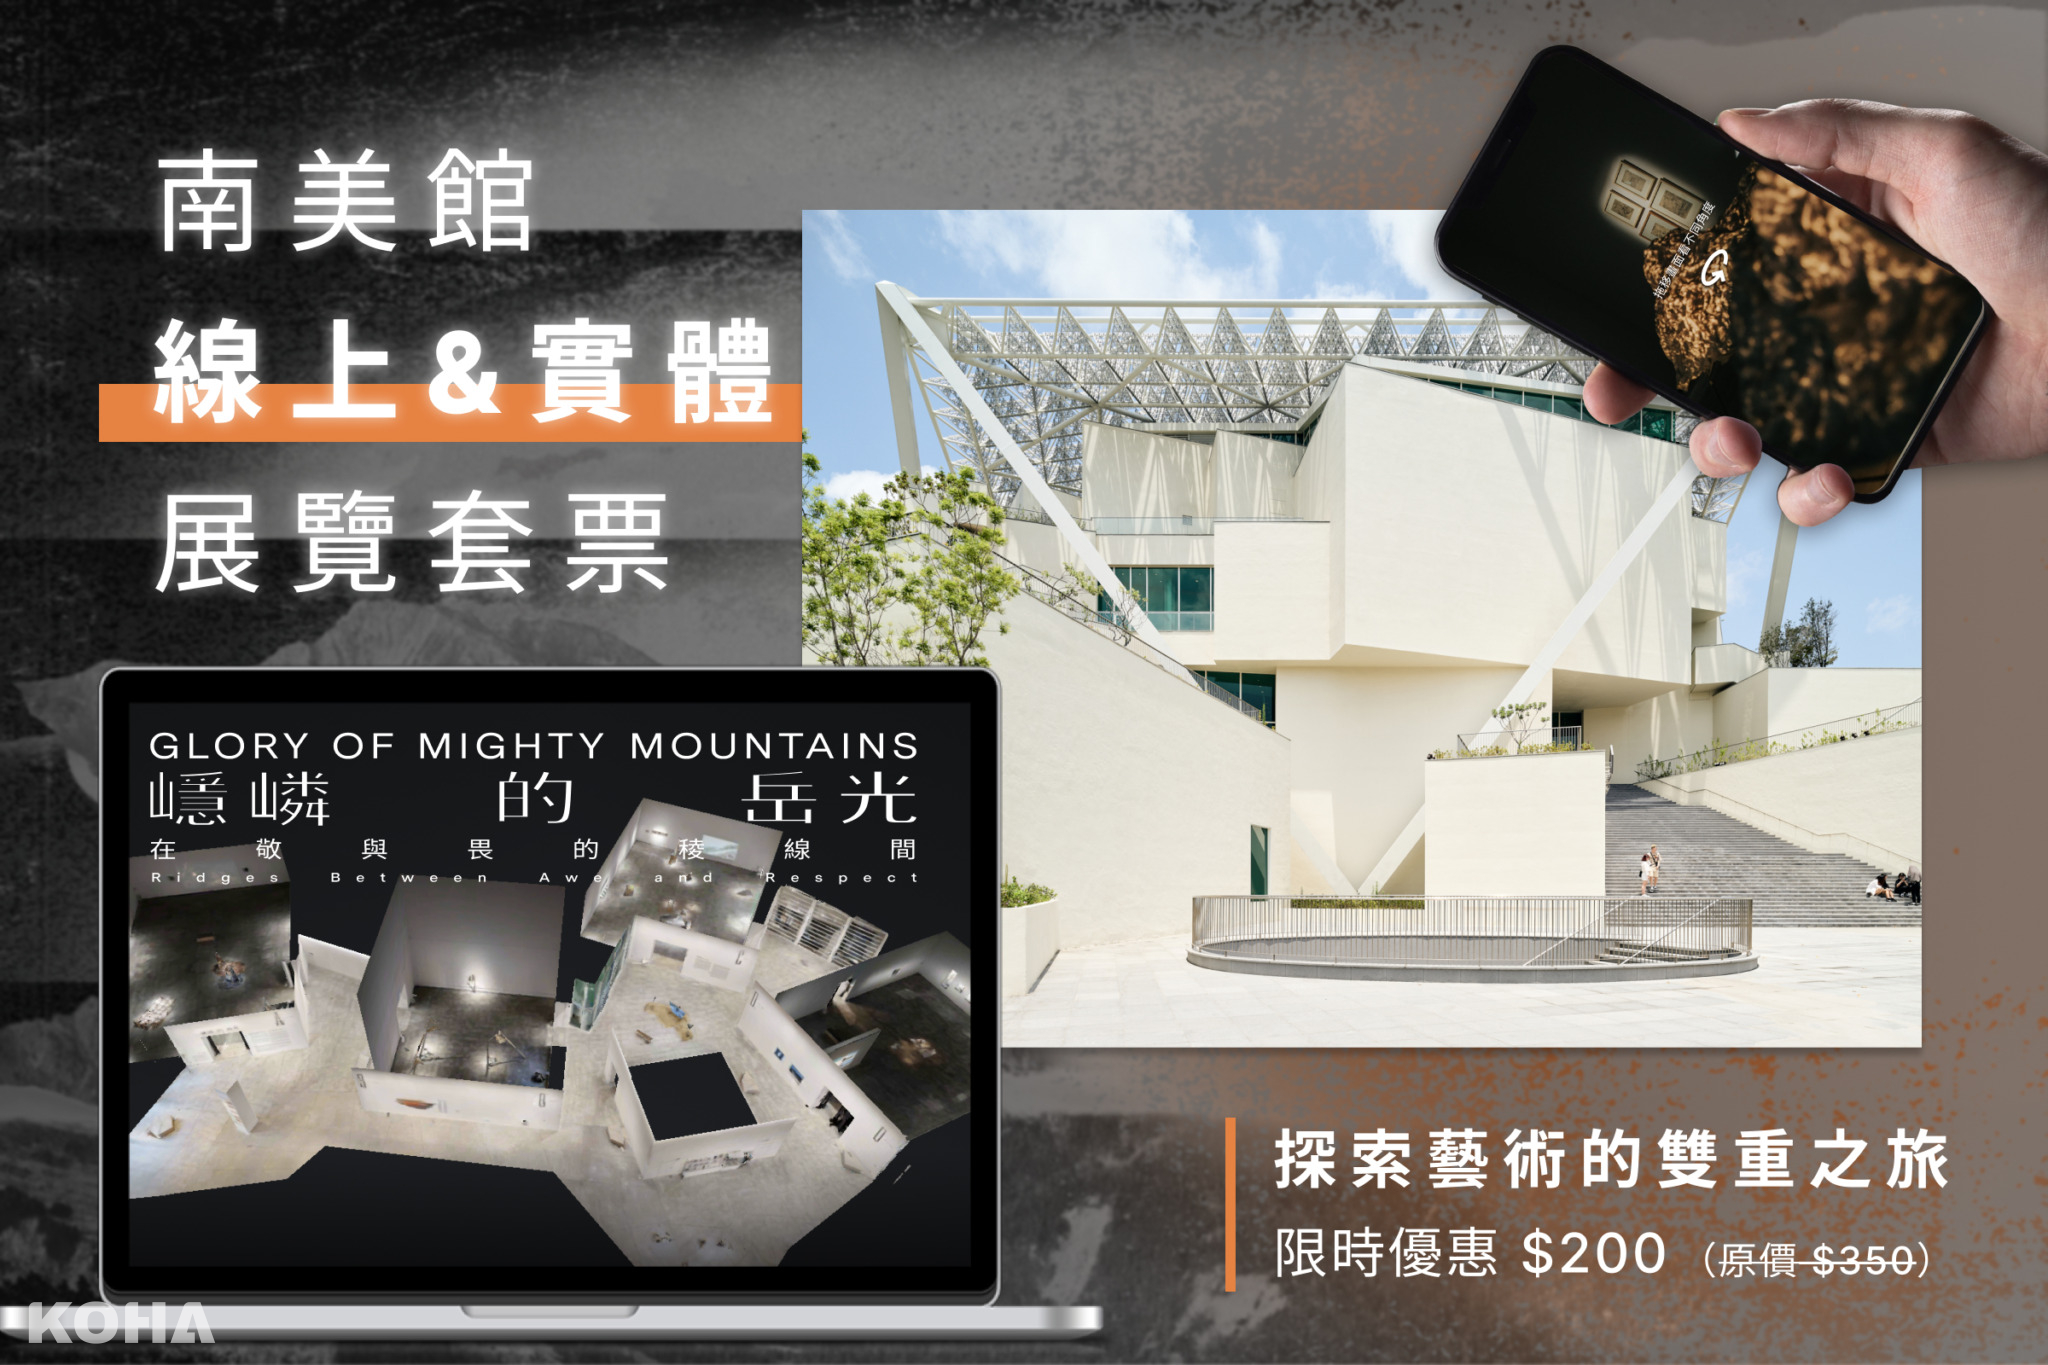 7：臺南市美術館推出實體線上展覽套票。圖片來源／臺南市美術館、ARTOGO